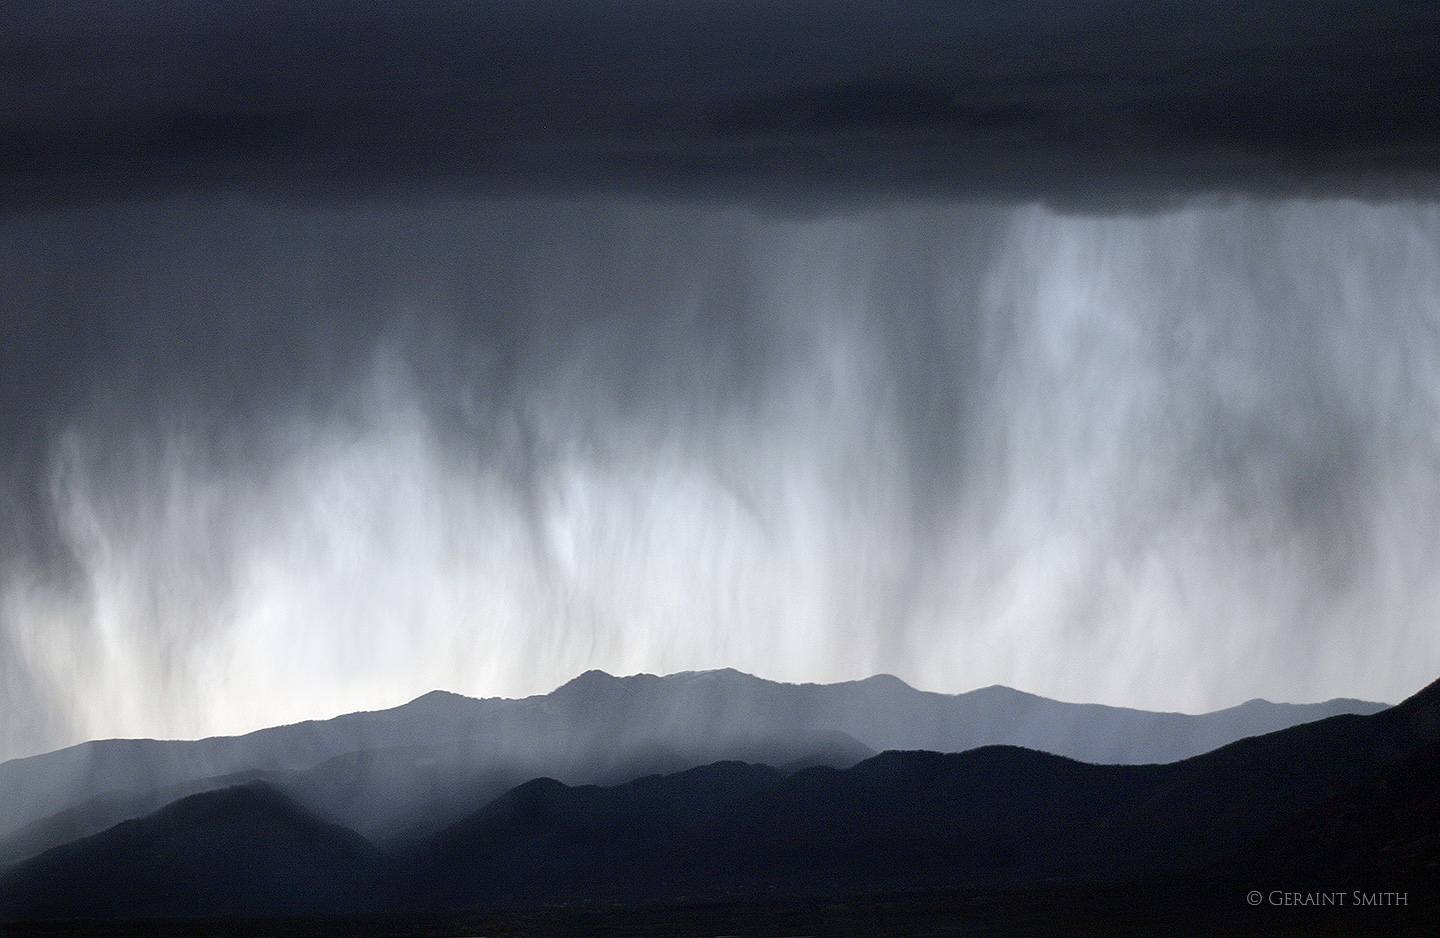 Walking rain, rain curtain, Taos mountains close up.